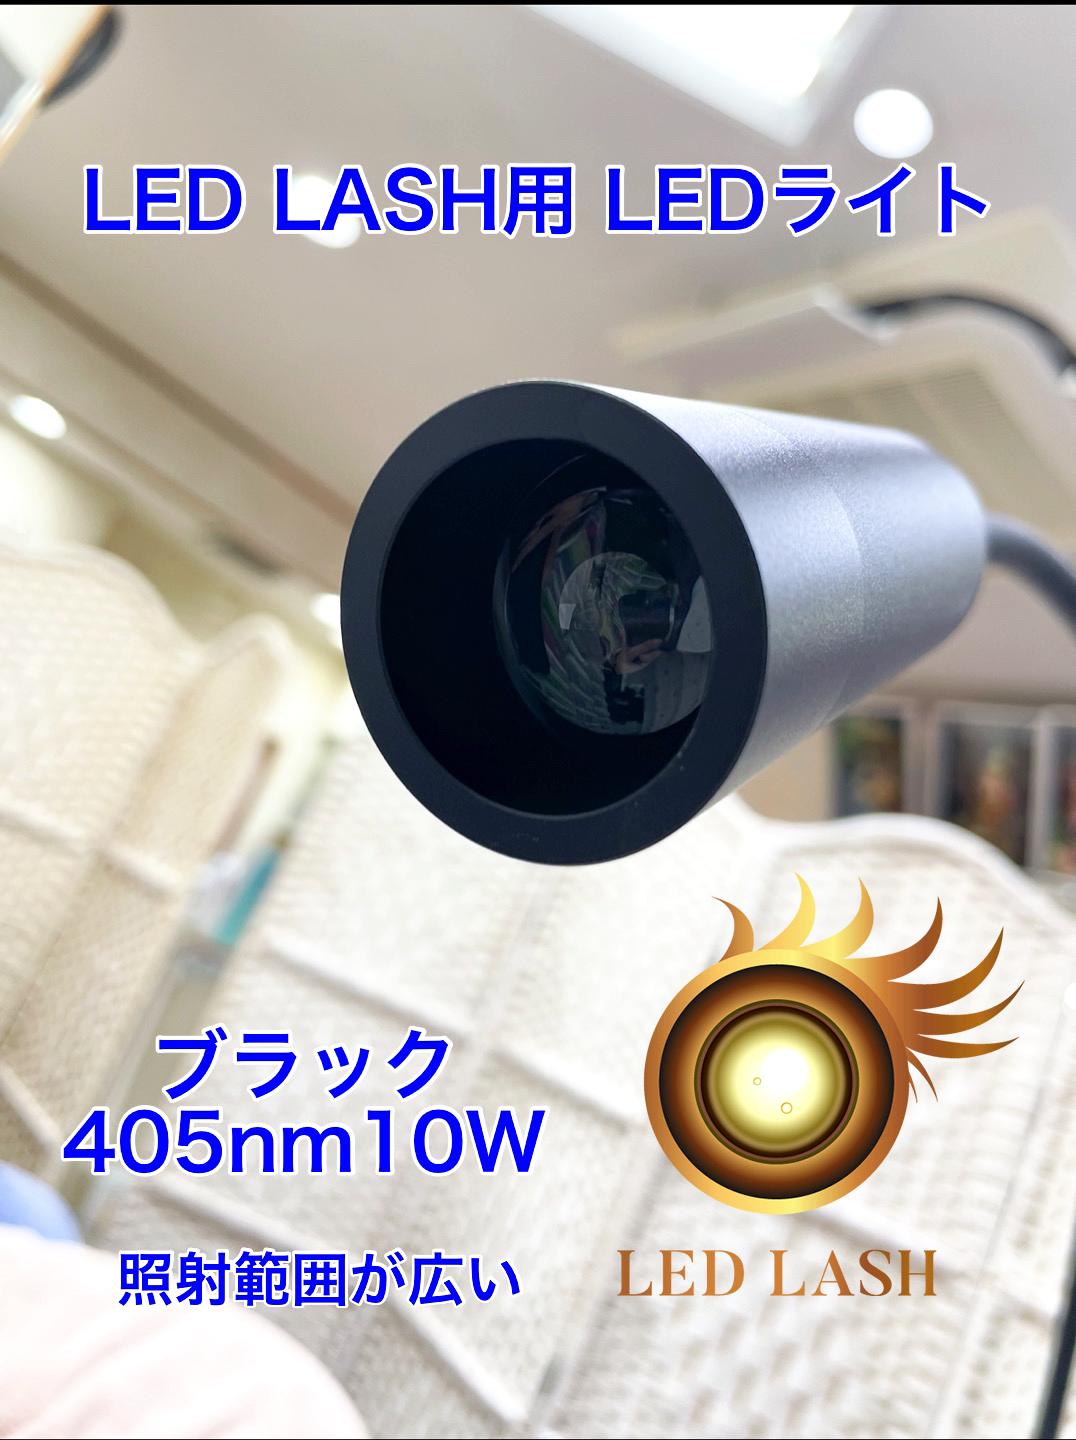 LEDまつ毛エクステ専用ライト405nm スタンドタイプ LED LASH画像